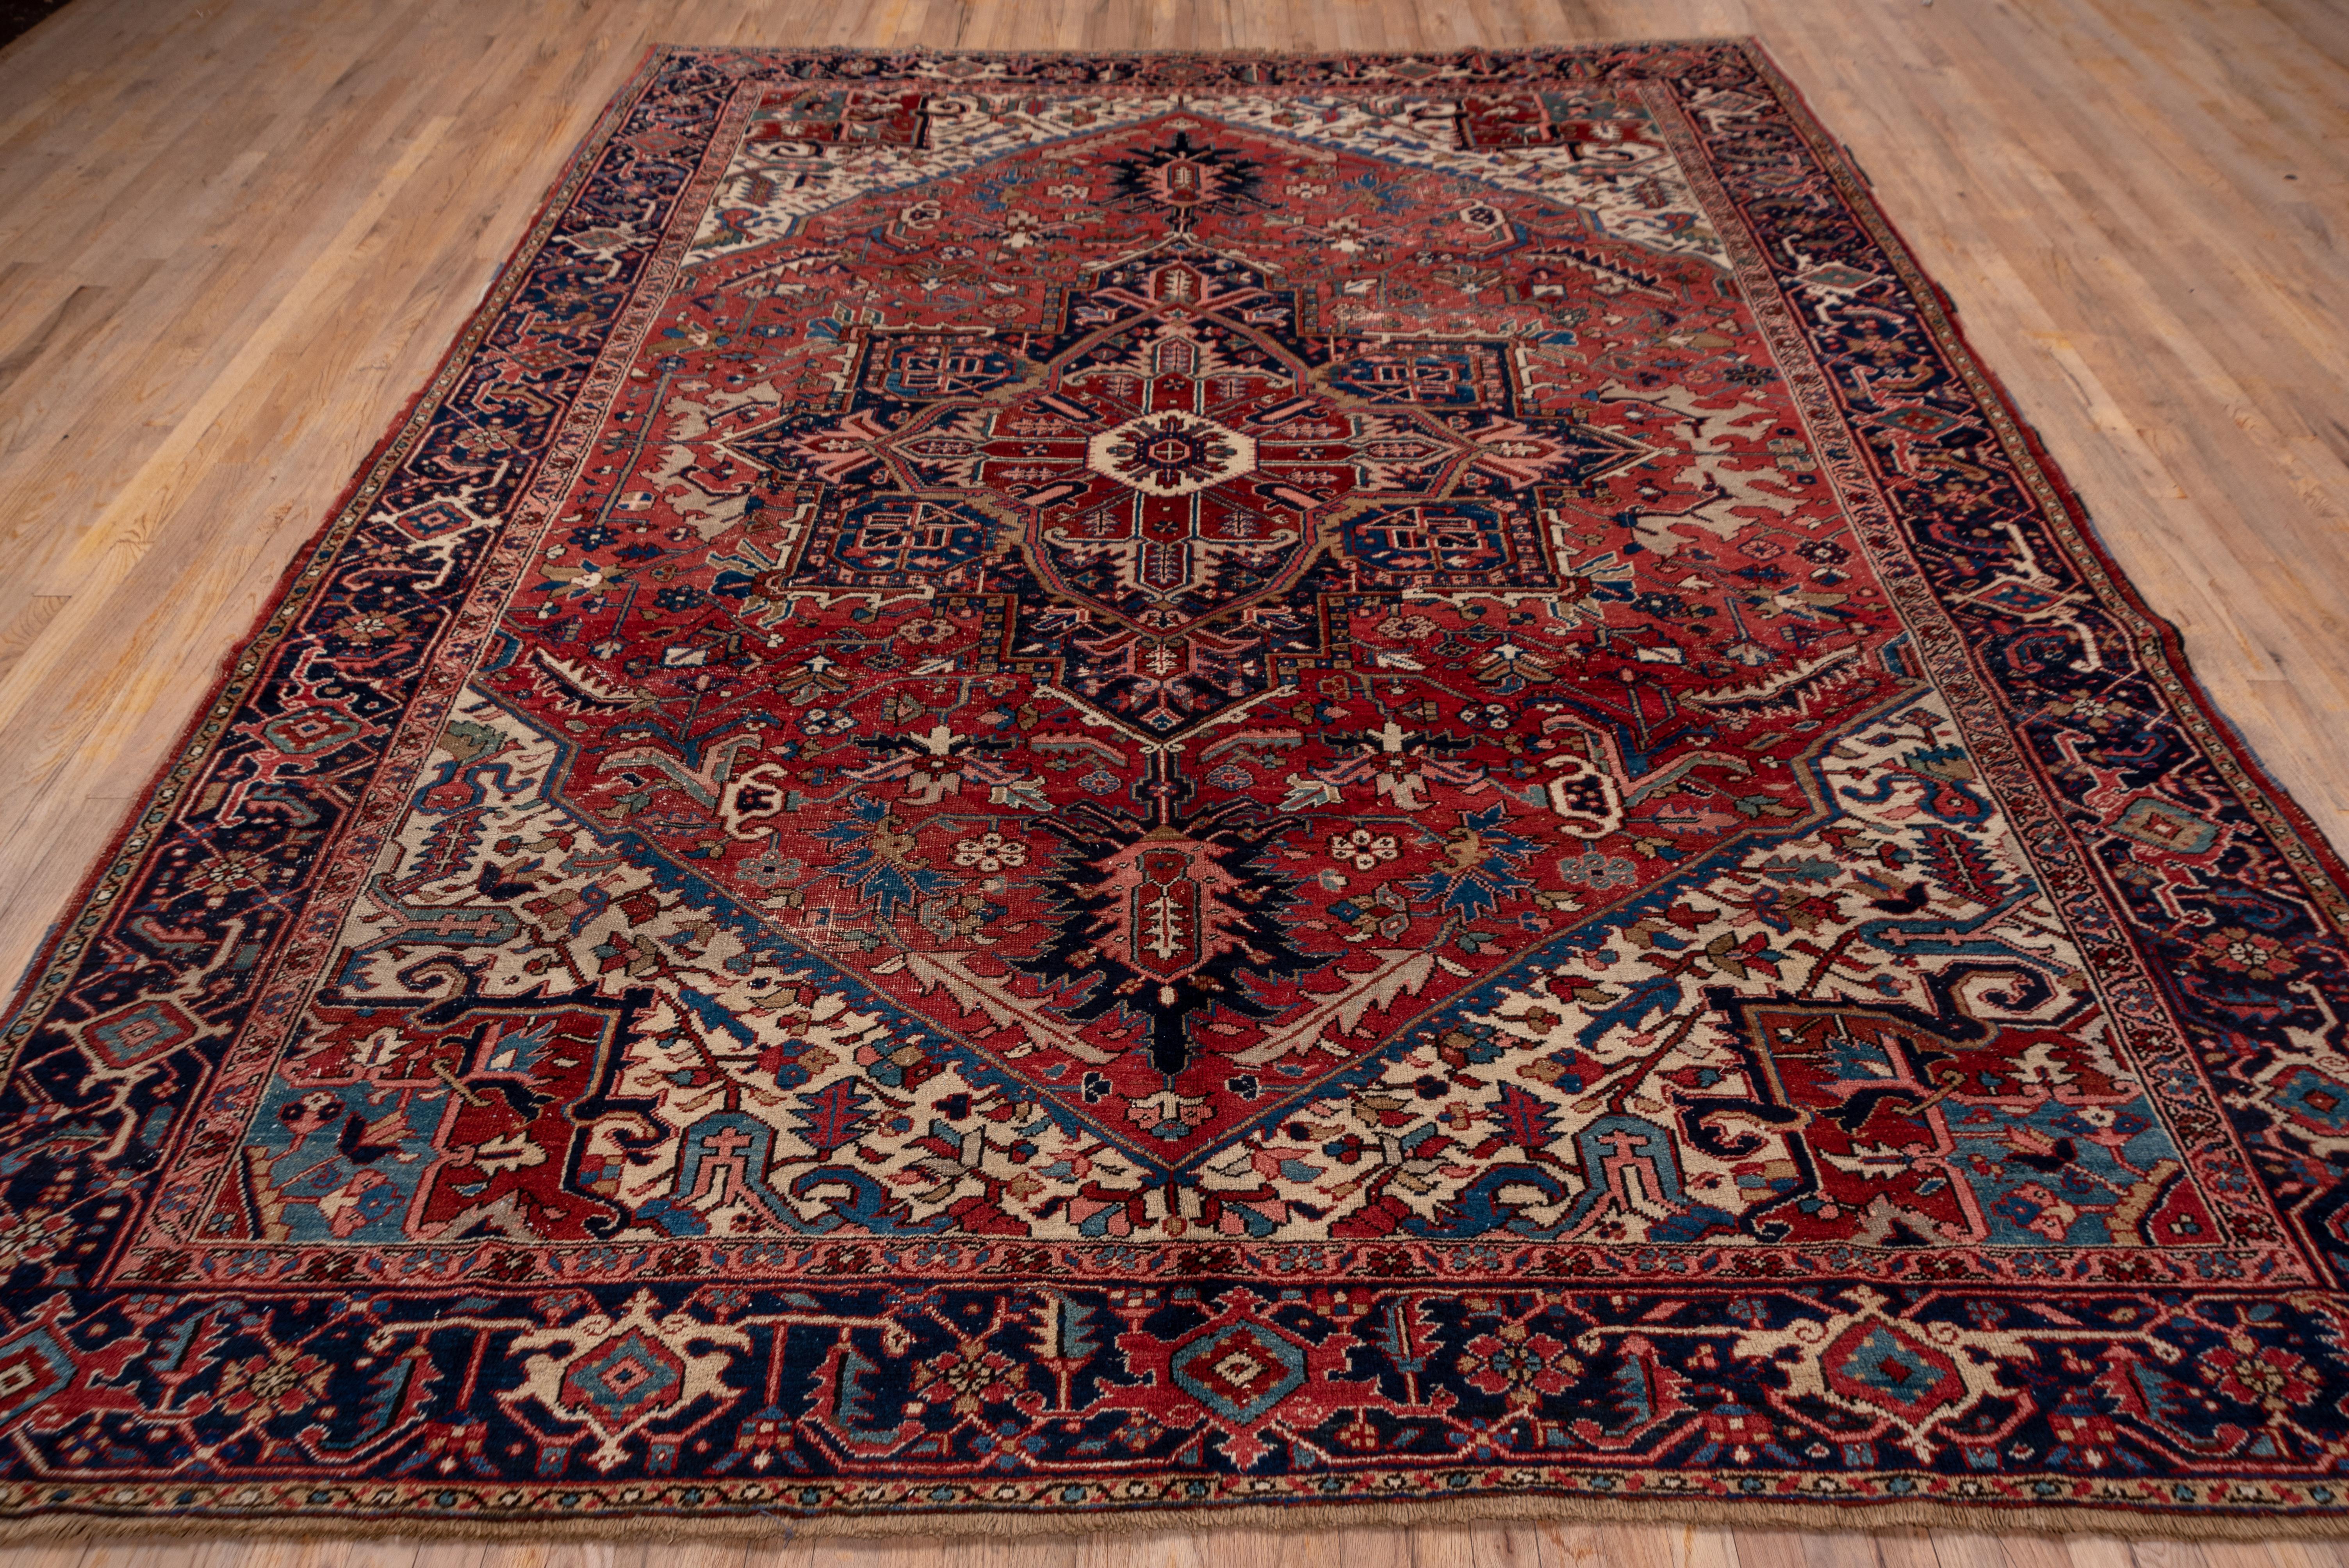 1940s rugs